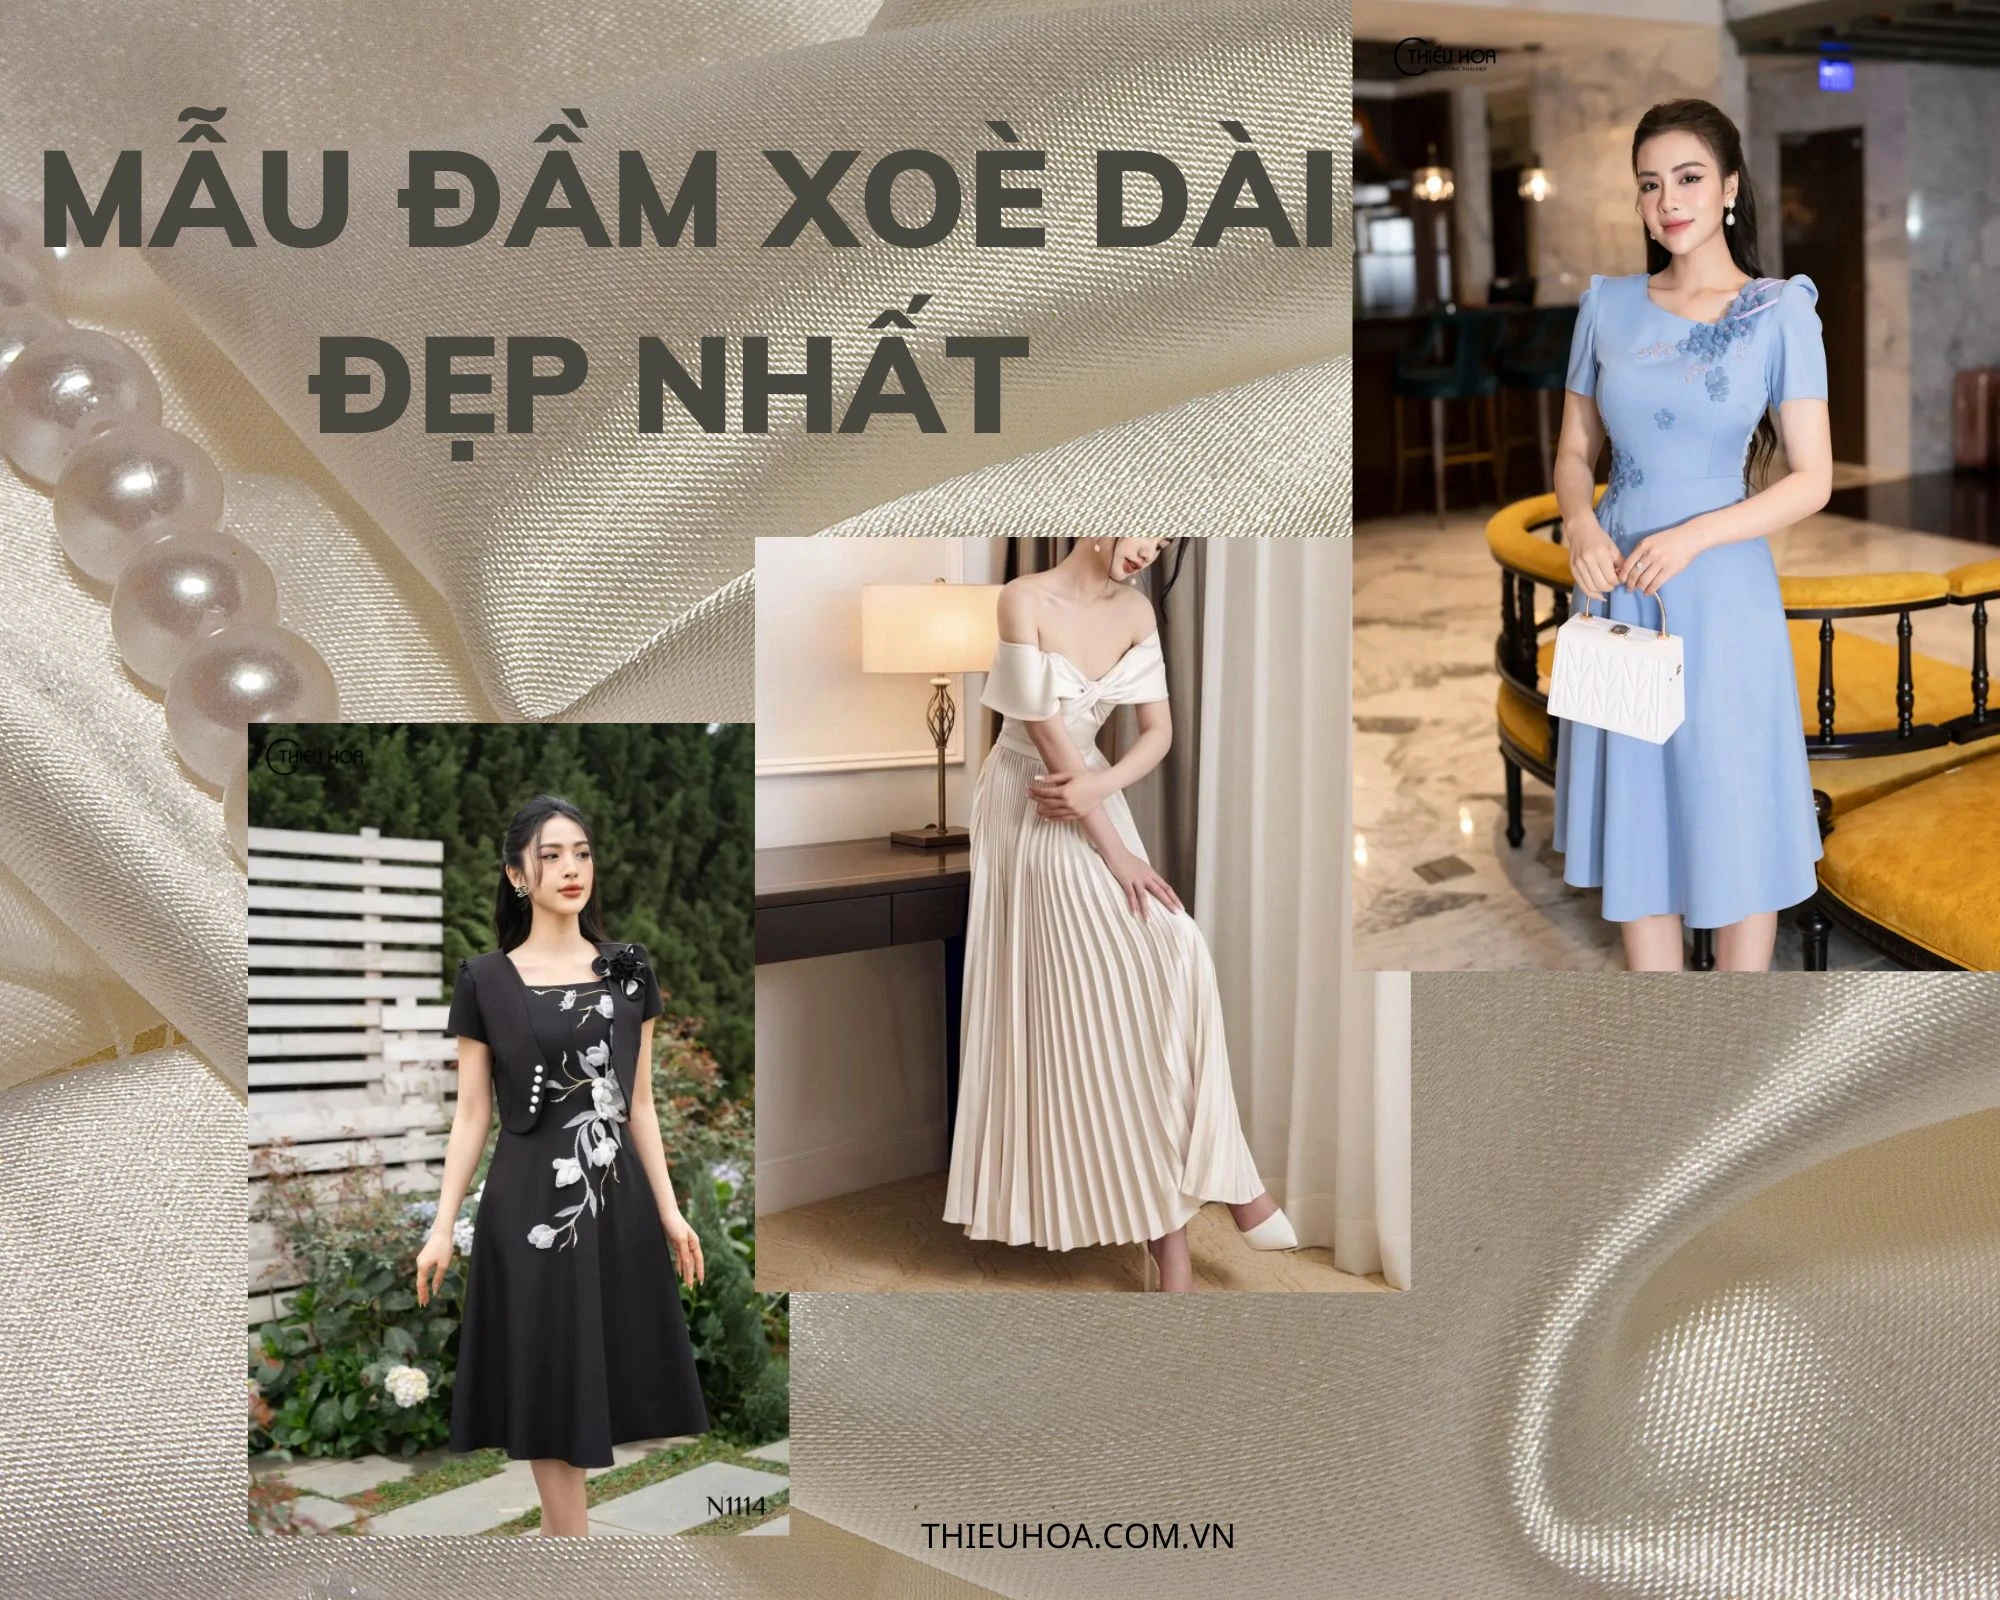 Những mẫu áo đầm đẹp xiêu lòng nàng từ ánh nhìn đầu tiên  Đồng hồ Hàn Quốc  Julius chính hãng tại Việt Nam